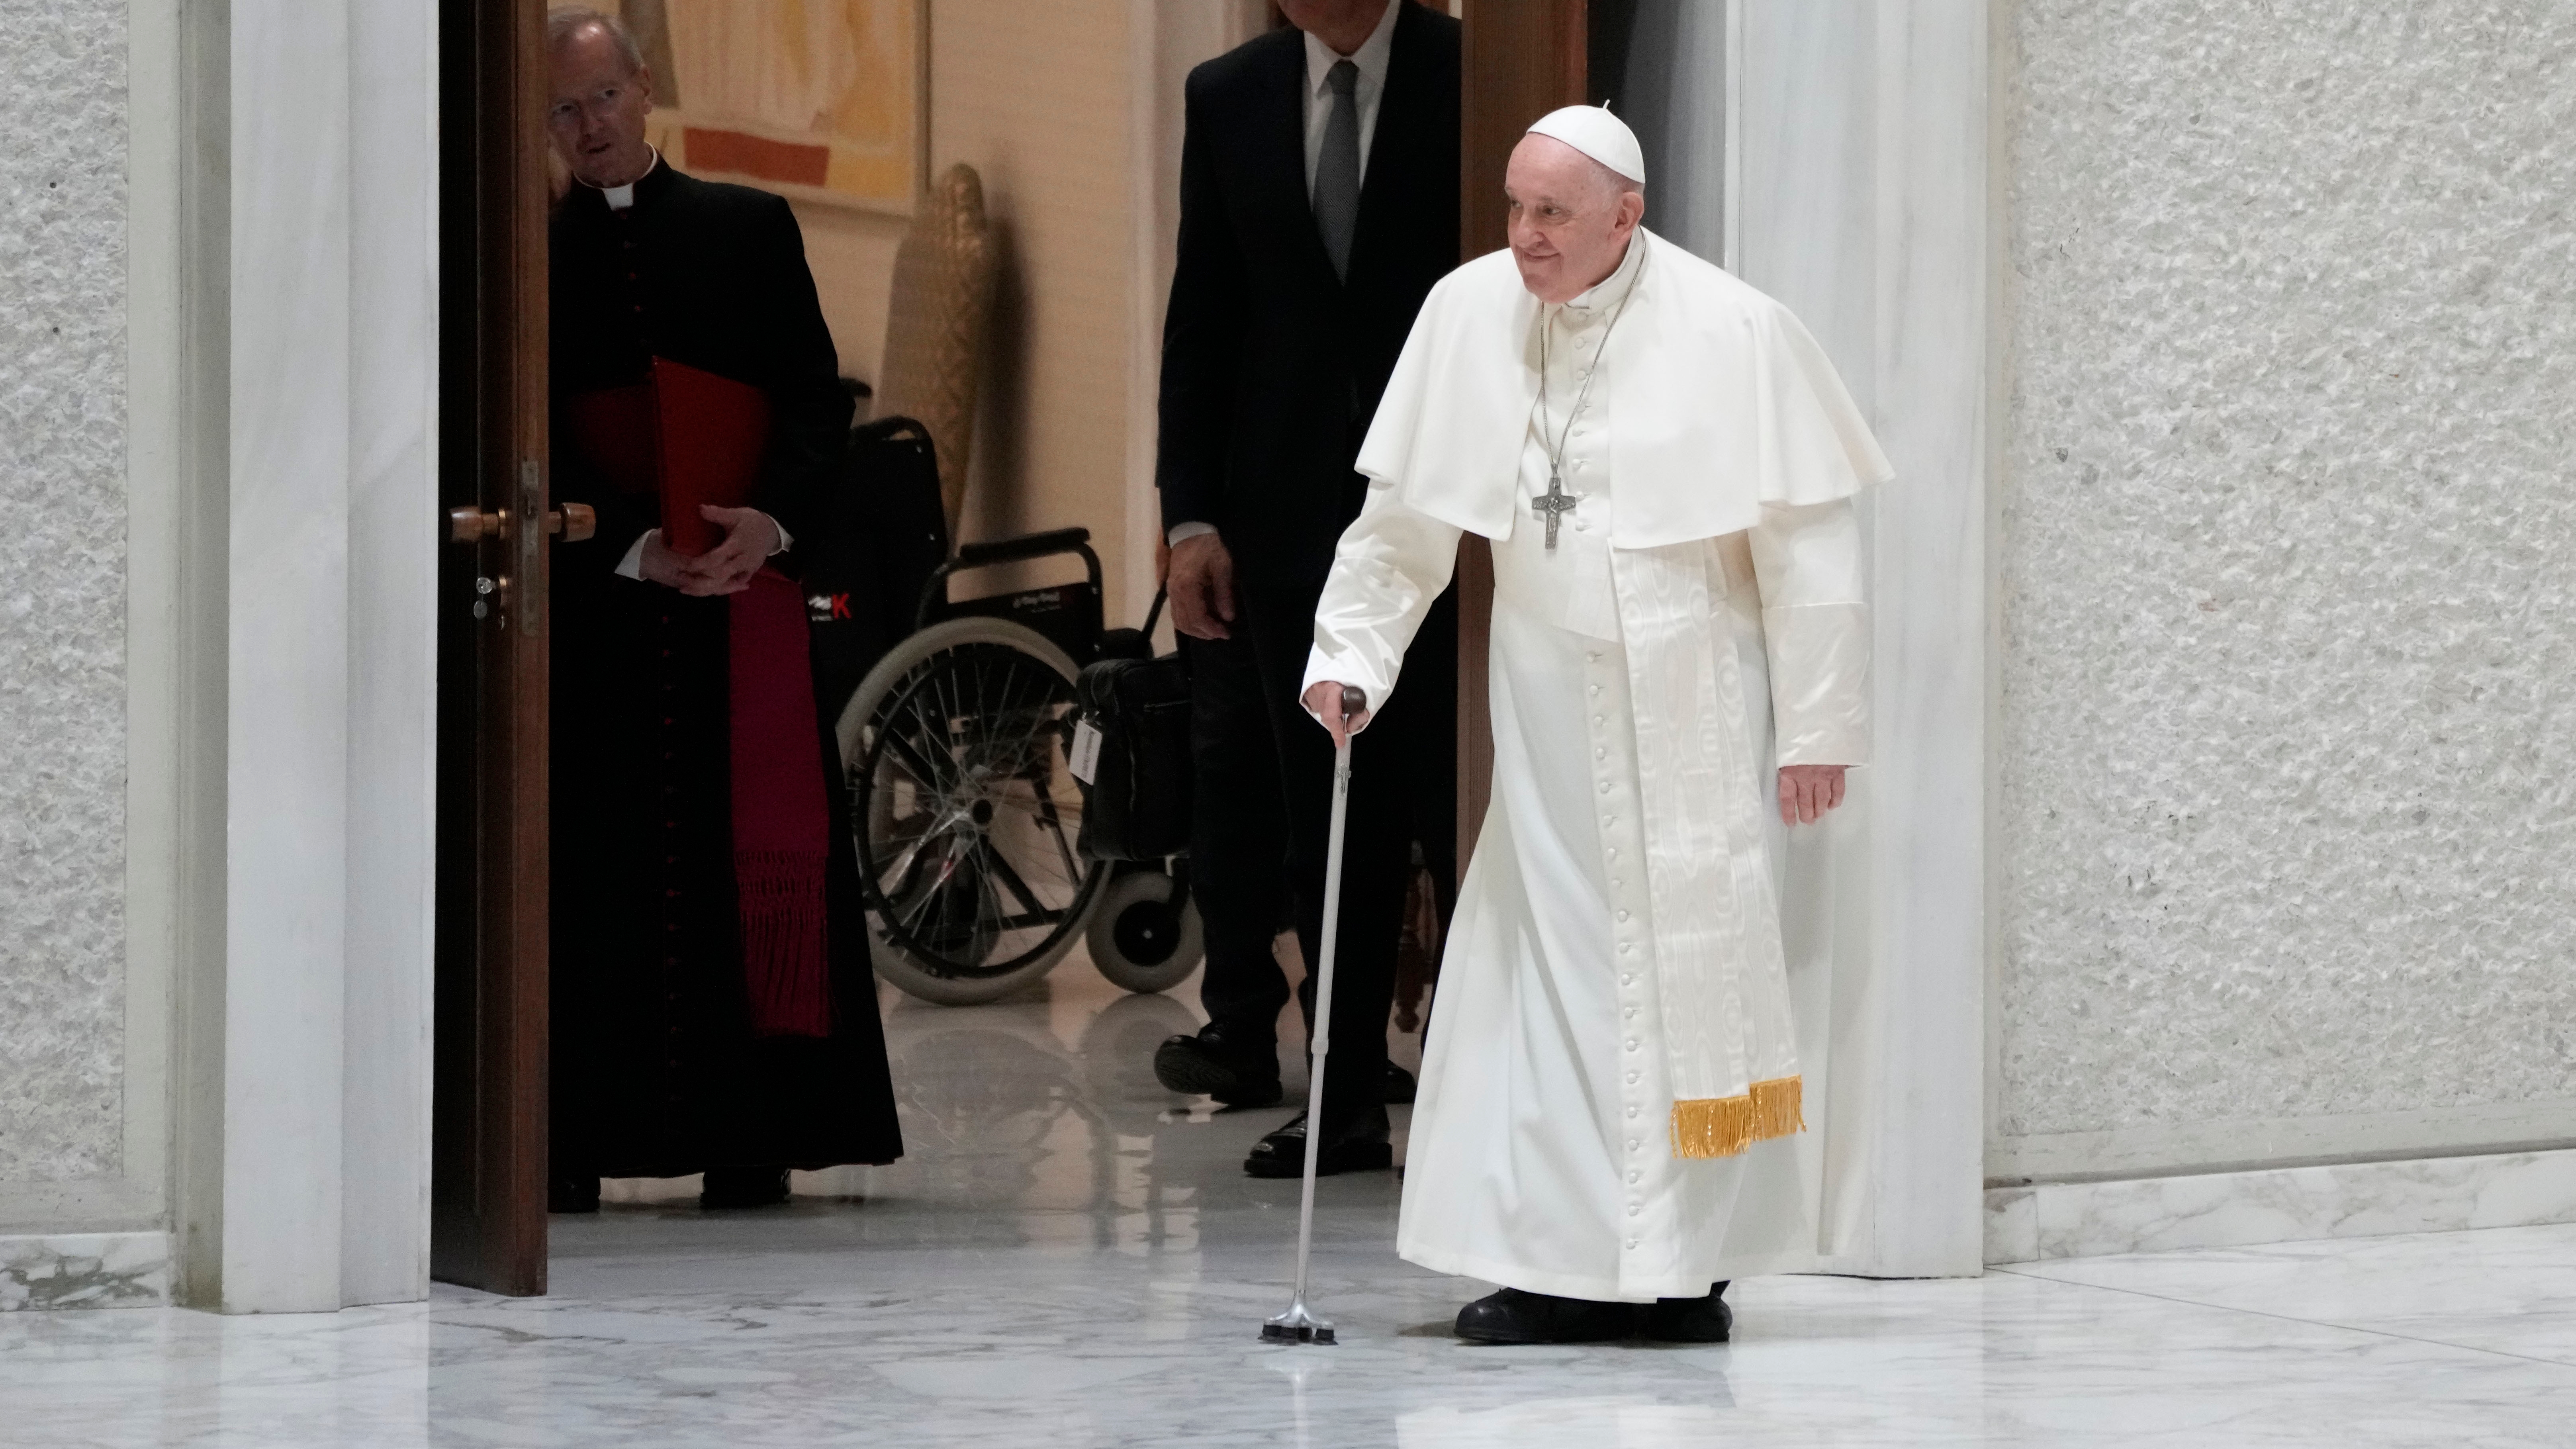 El pontífice argentino ya ingresó por una decena de días en el hospital Gemelli en julio de 2021 para una operación de colon. Francisco reconoció que esa intervención le dejó “secuelas” por la anestesia. (AP)